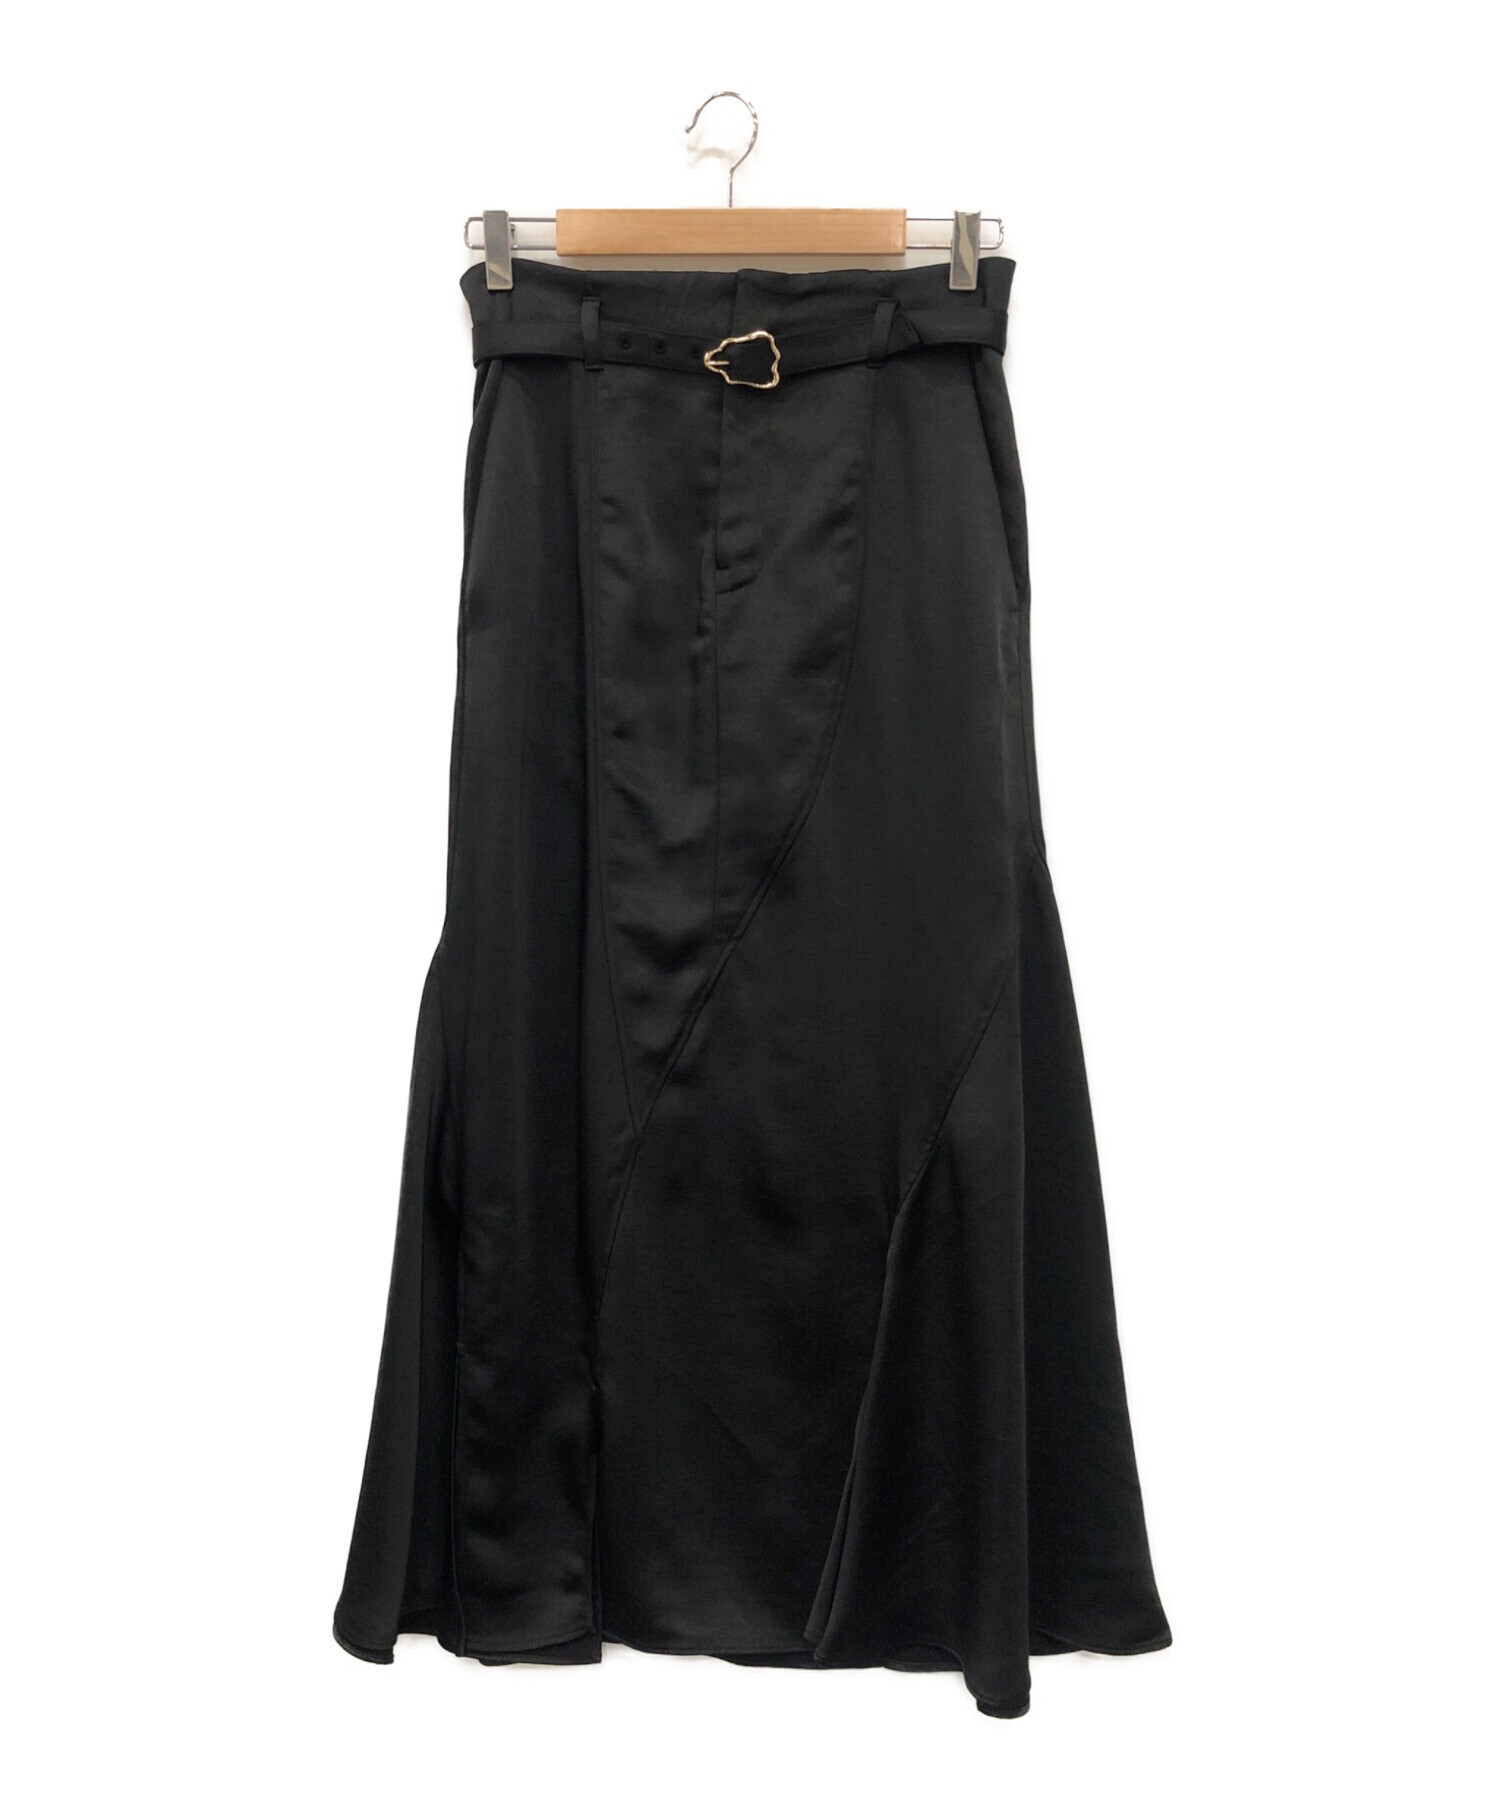 何卒よろしくお願いいたしますMURRAL  Curvy satin skirt (Black)  ミューラル